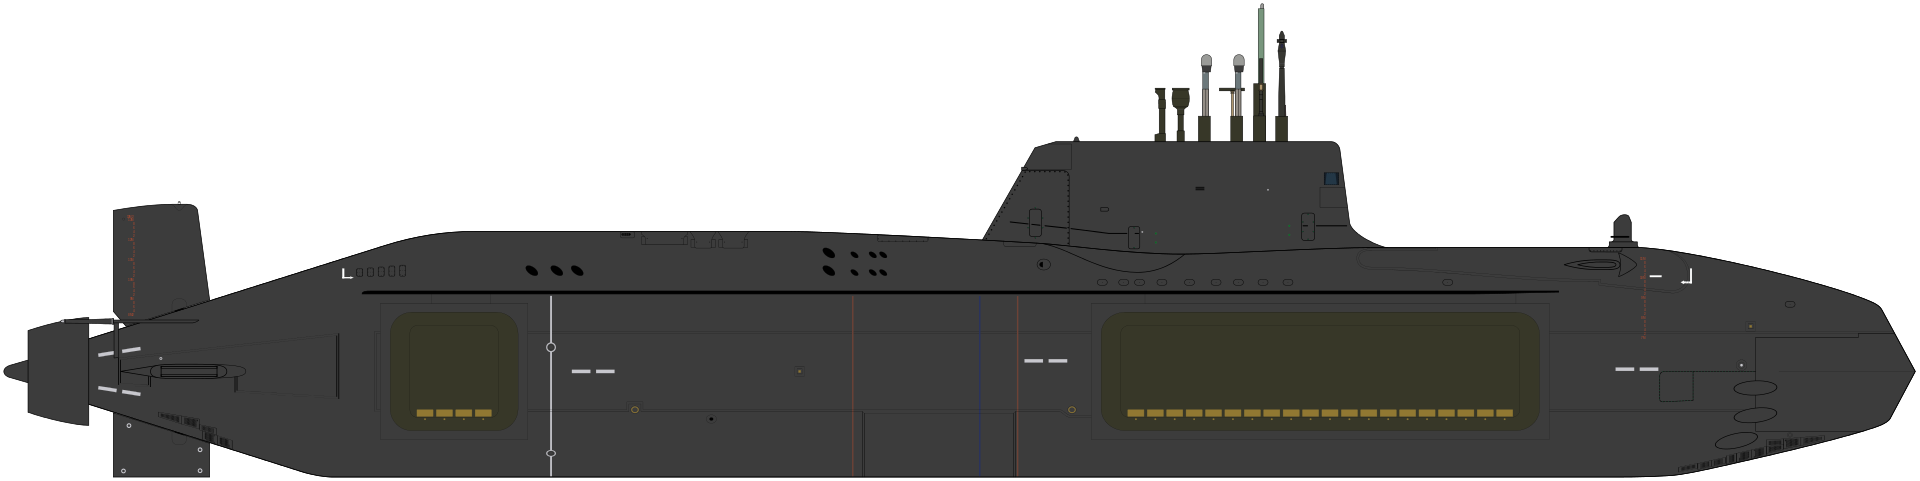 Astute class submarine, British Royal Navy